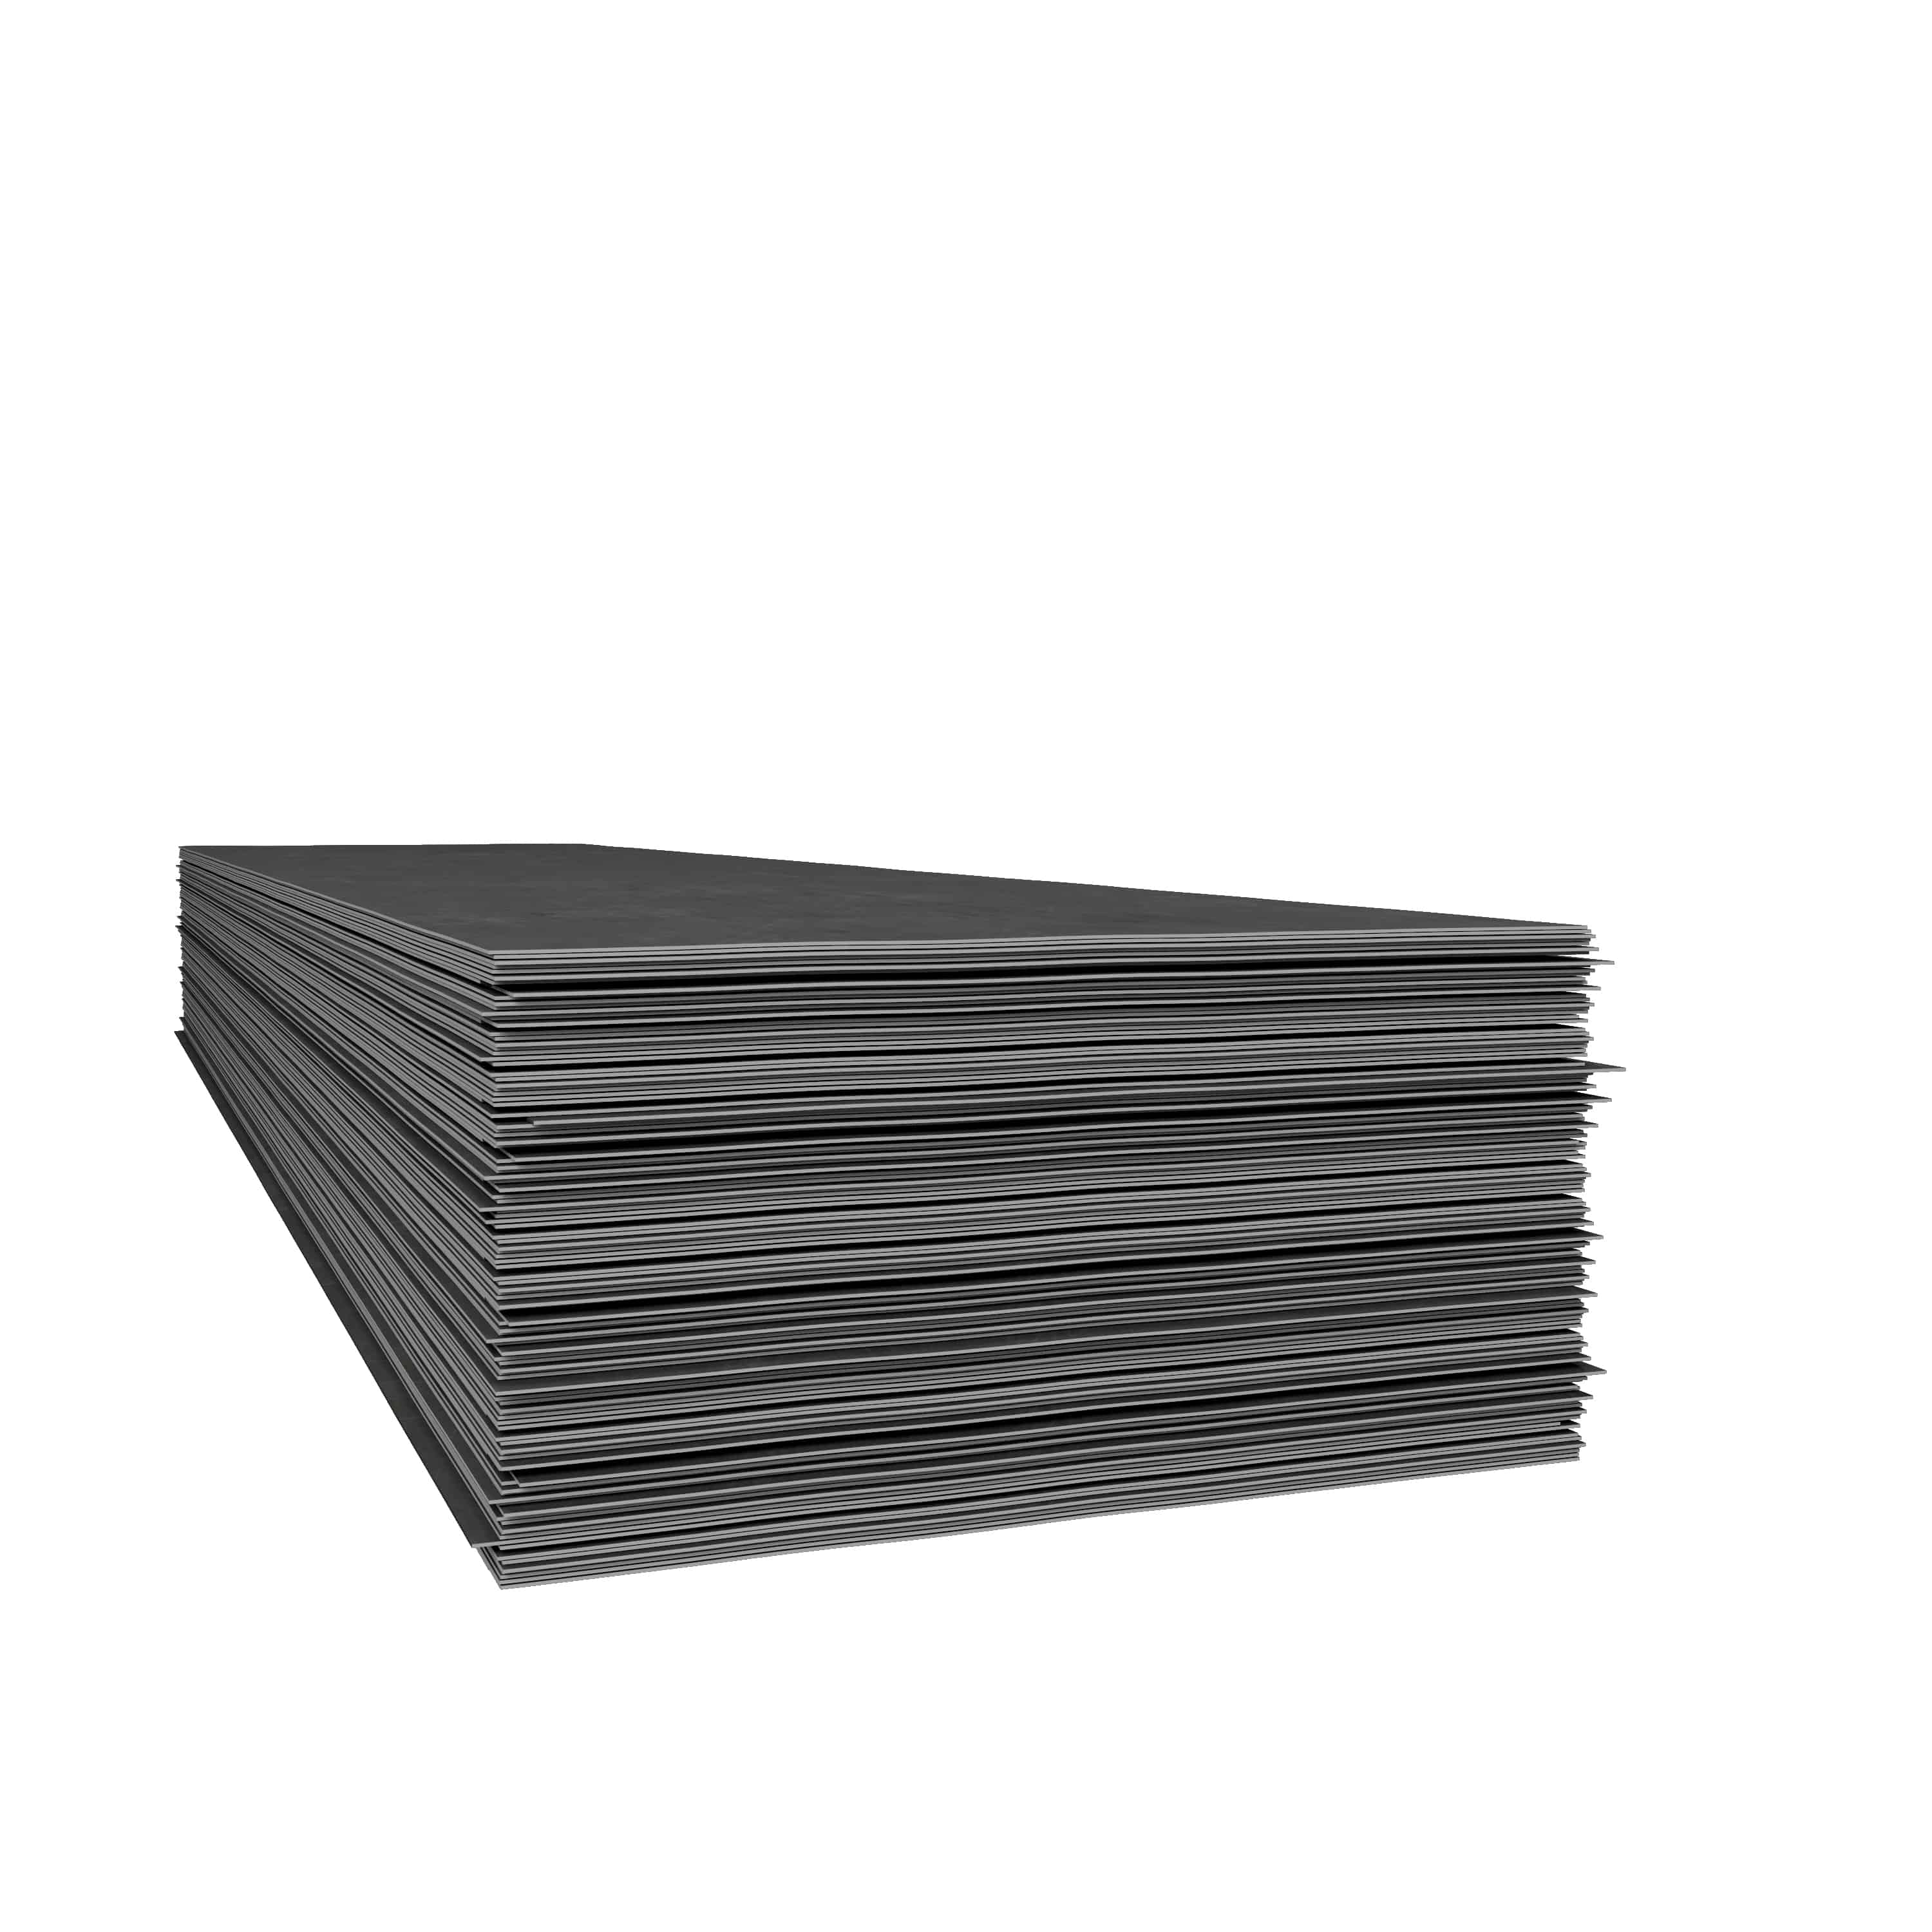 Tabla neagra - Tabla neagra 18 x 2000 x 4000 mm S275JR, https:maxbau.ro